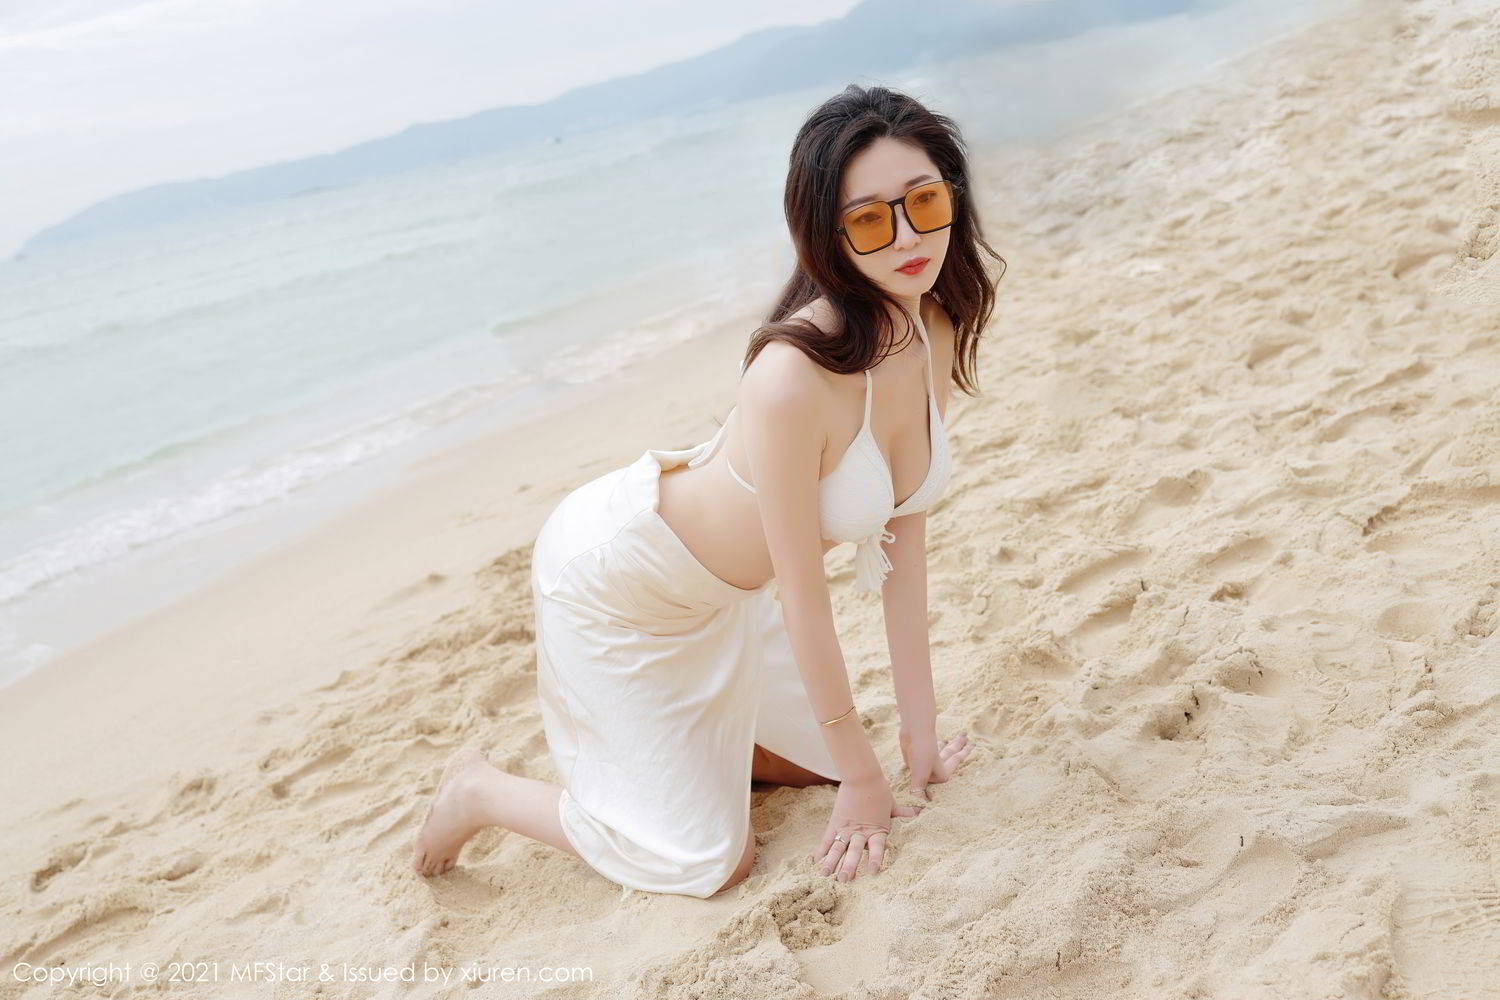 海边沙滩比基尼白裙美女安琪Yee性感旅拍写真显完美迷人身材套图23